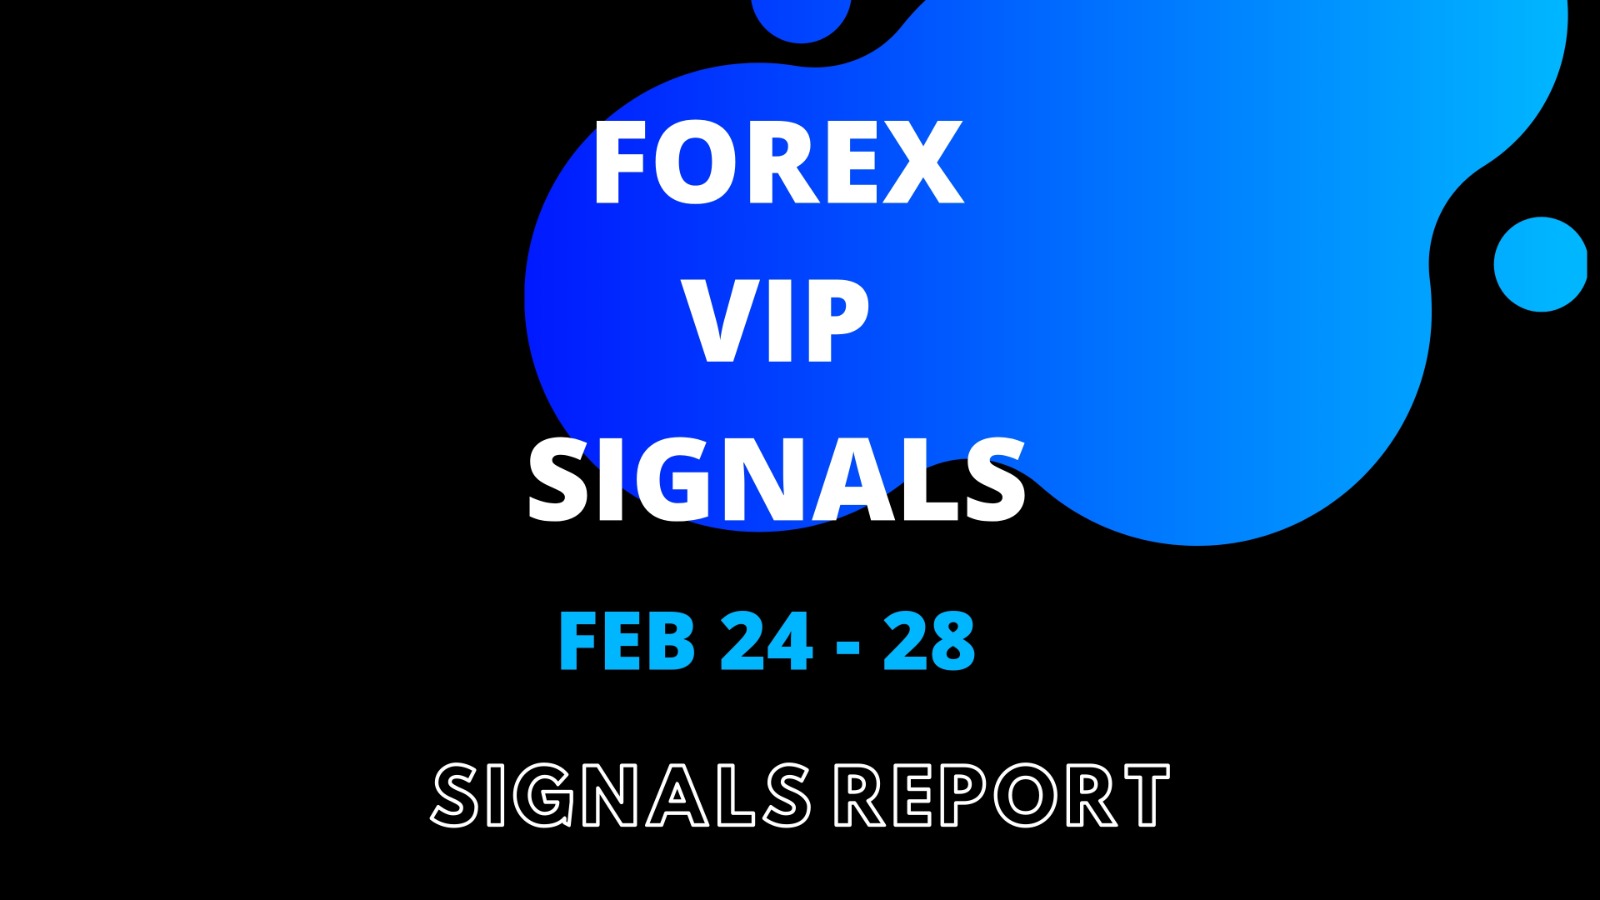 best forex signals